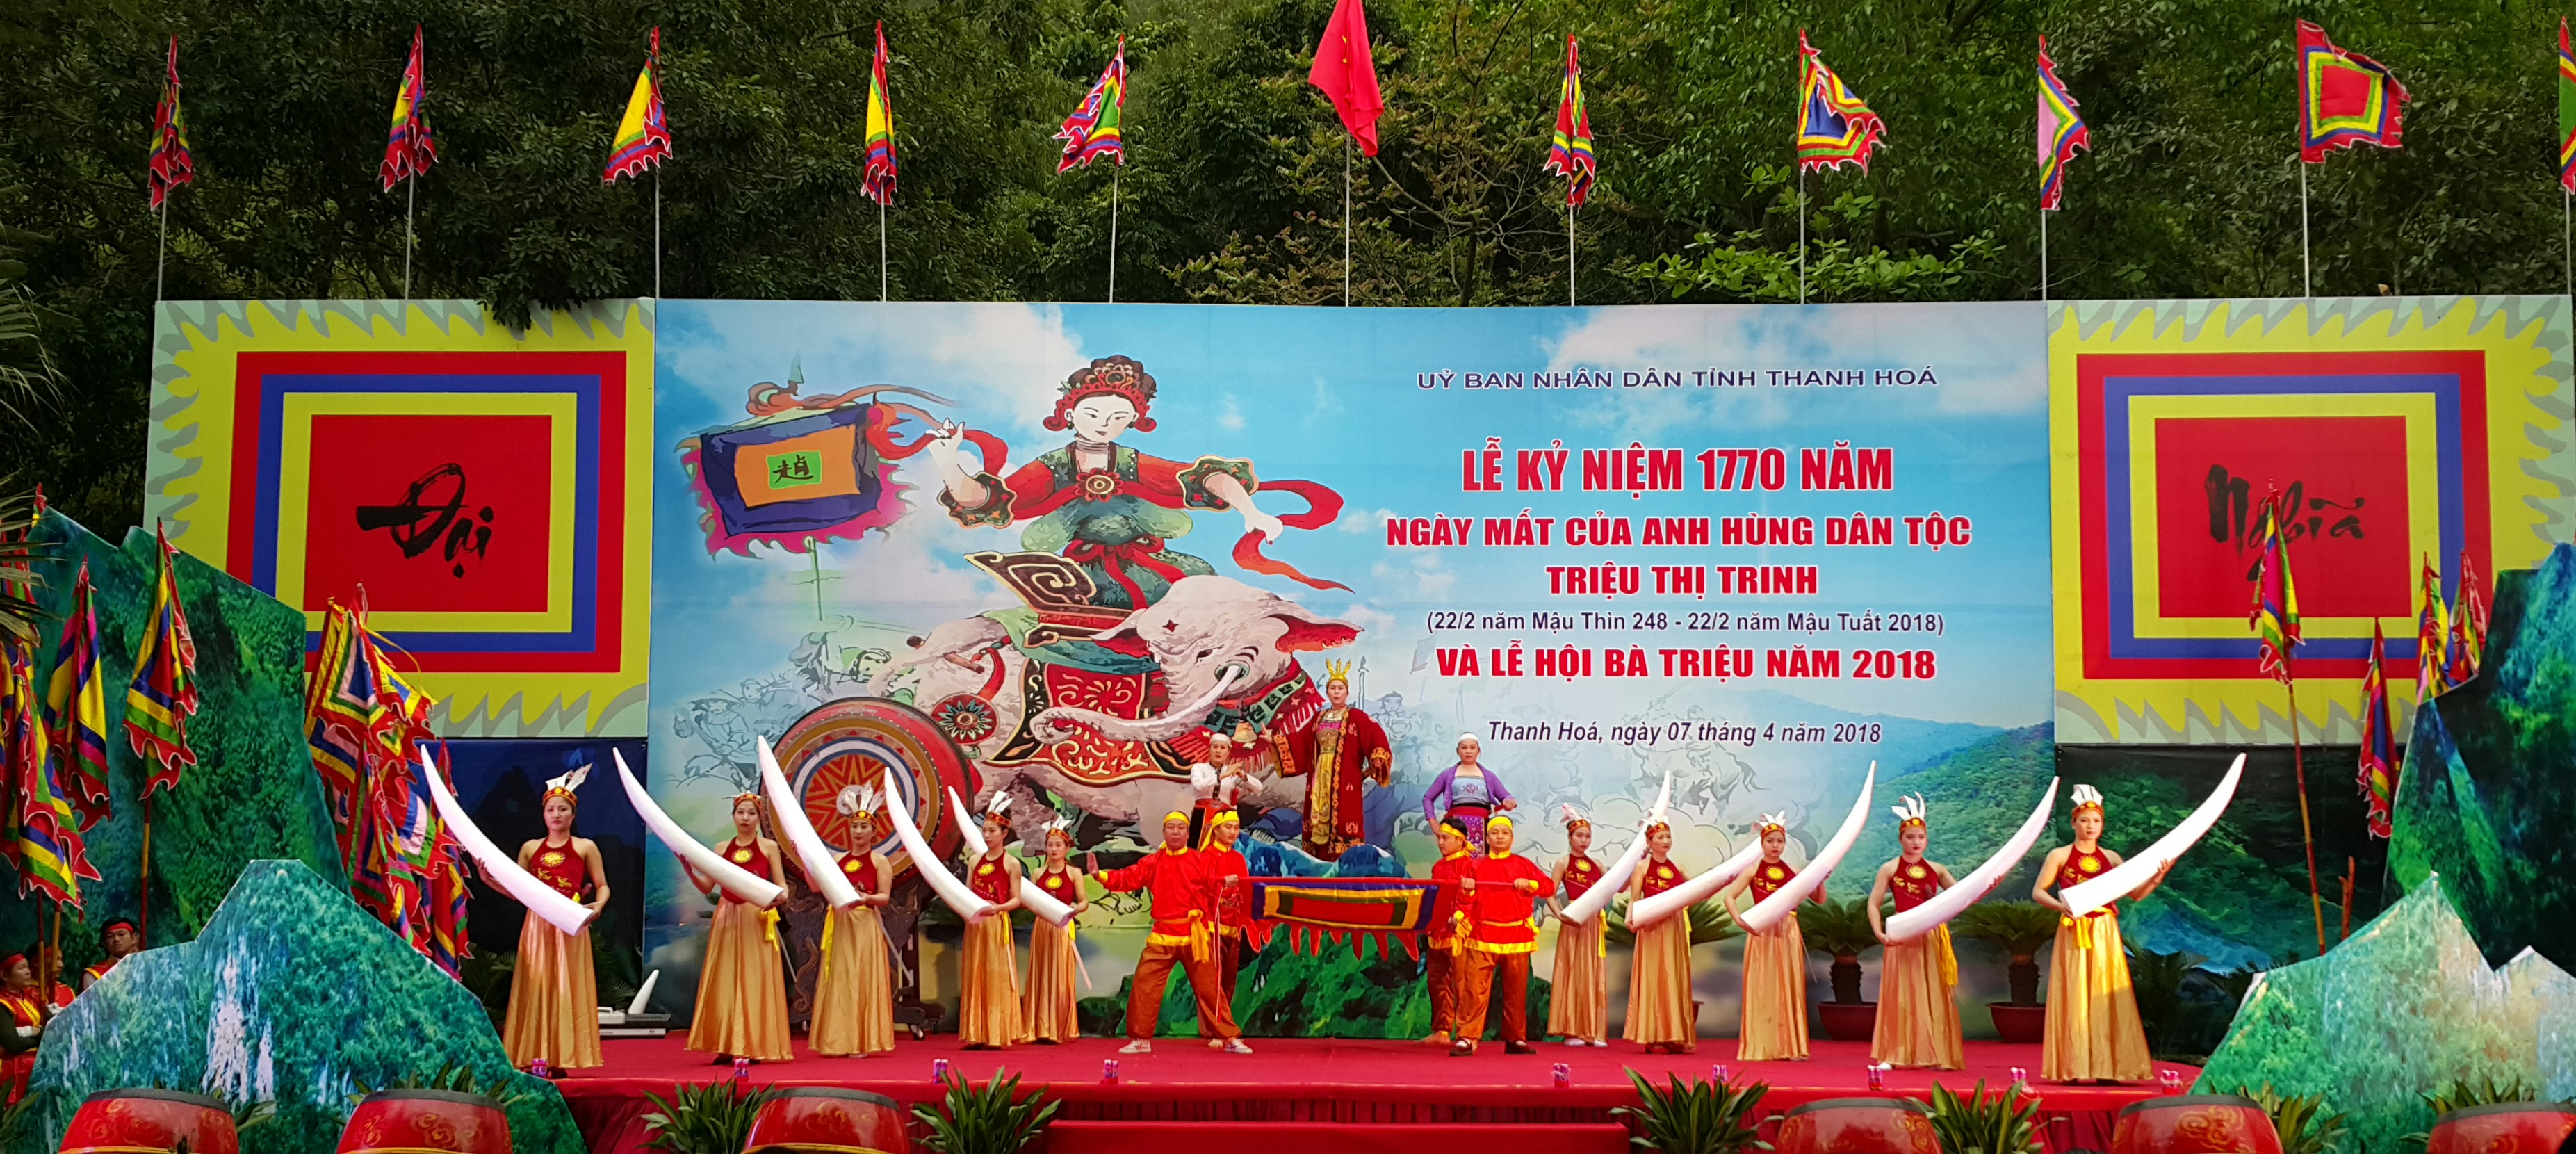 Kỷ niệm 1770 năm ngày mất của Anh hùng dân tộc Triệu Thị Trinh và Lễ hội Bà Triệu năm 2018